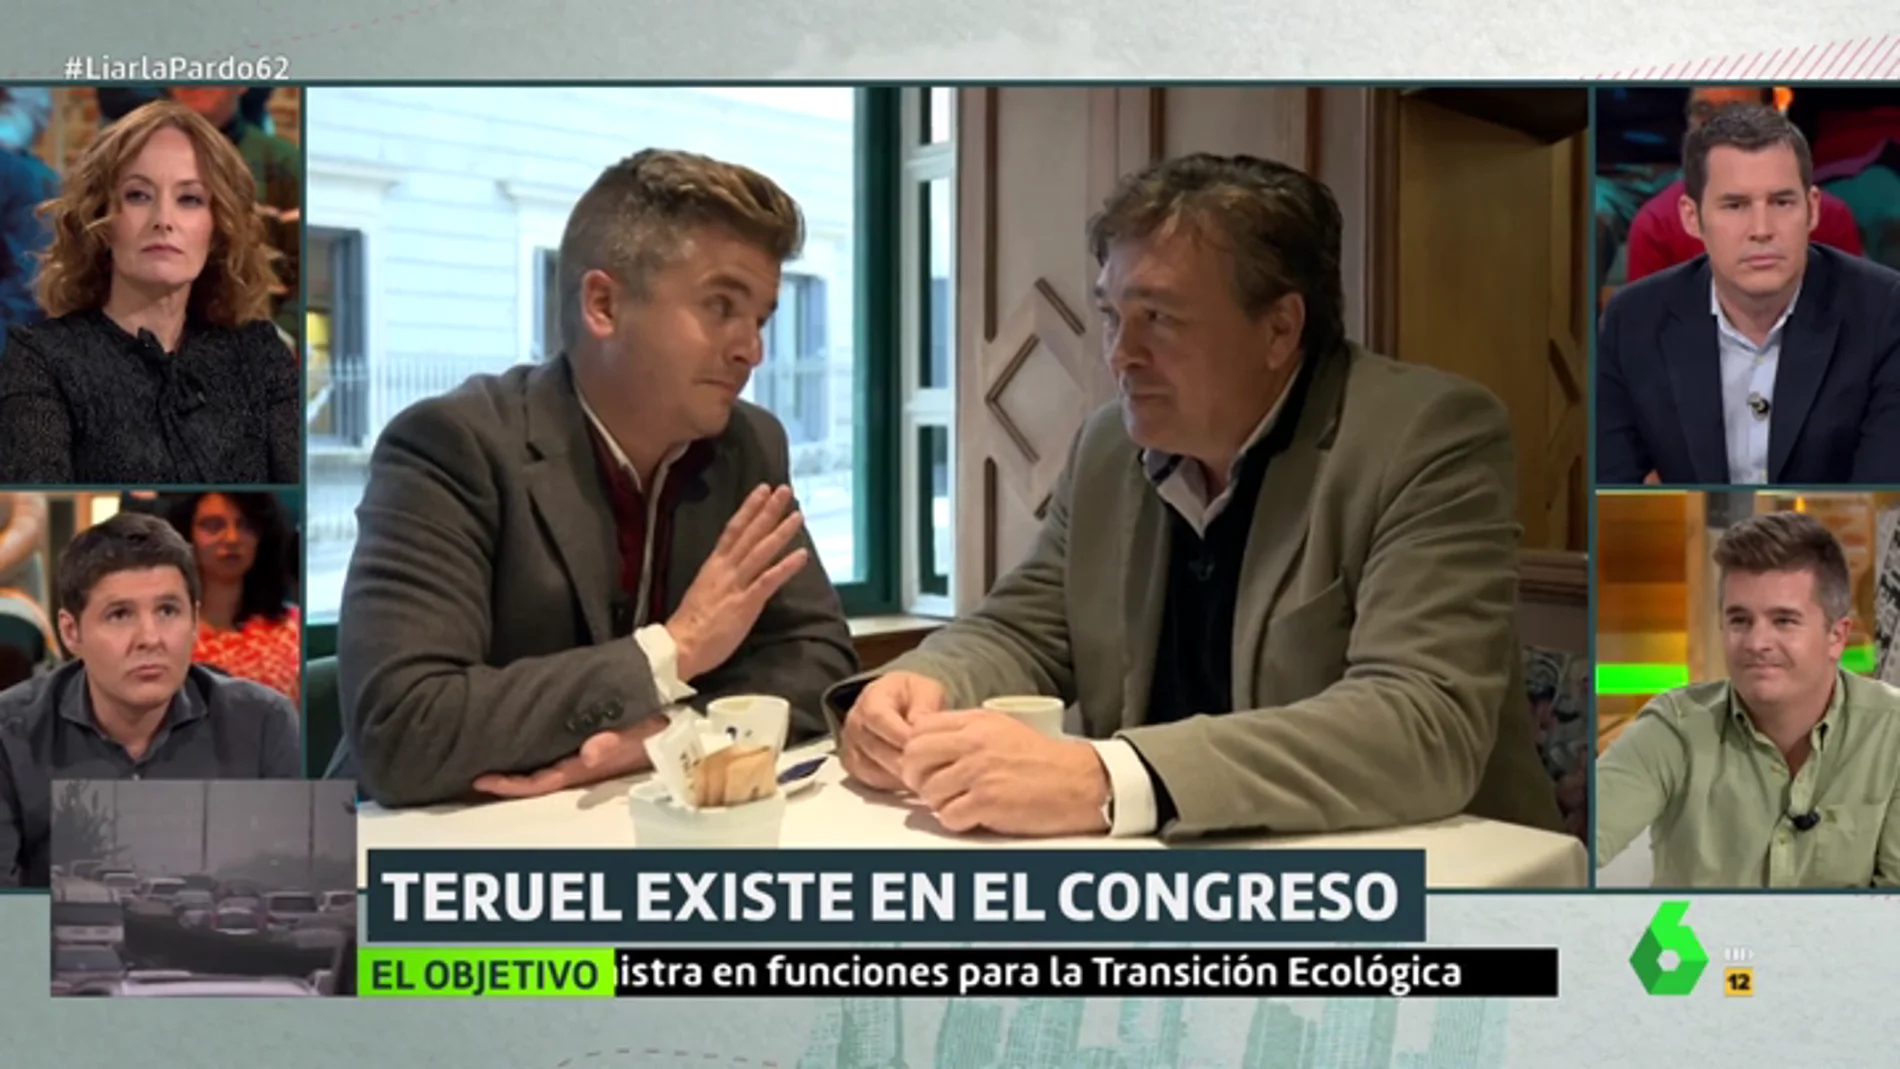 Tomás Guitarte, diputado de Teruel Existe: "Queremos parecernos a los ciudadanos, no a los políticos"